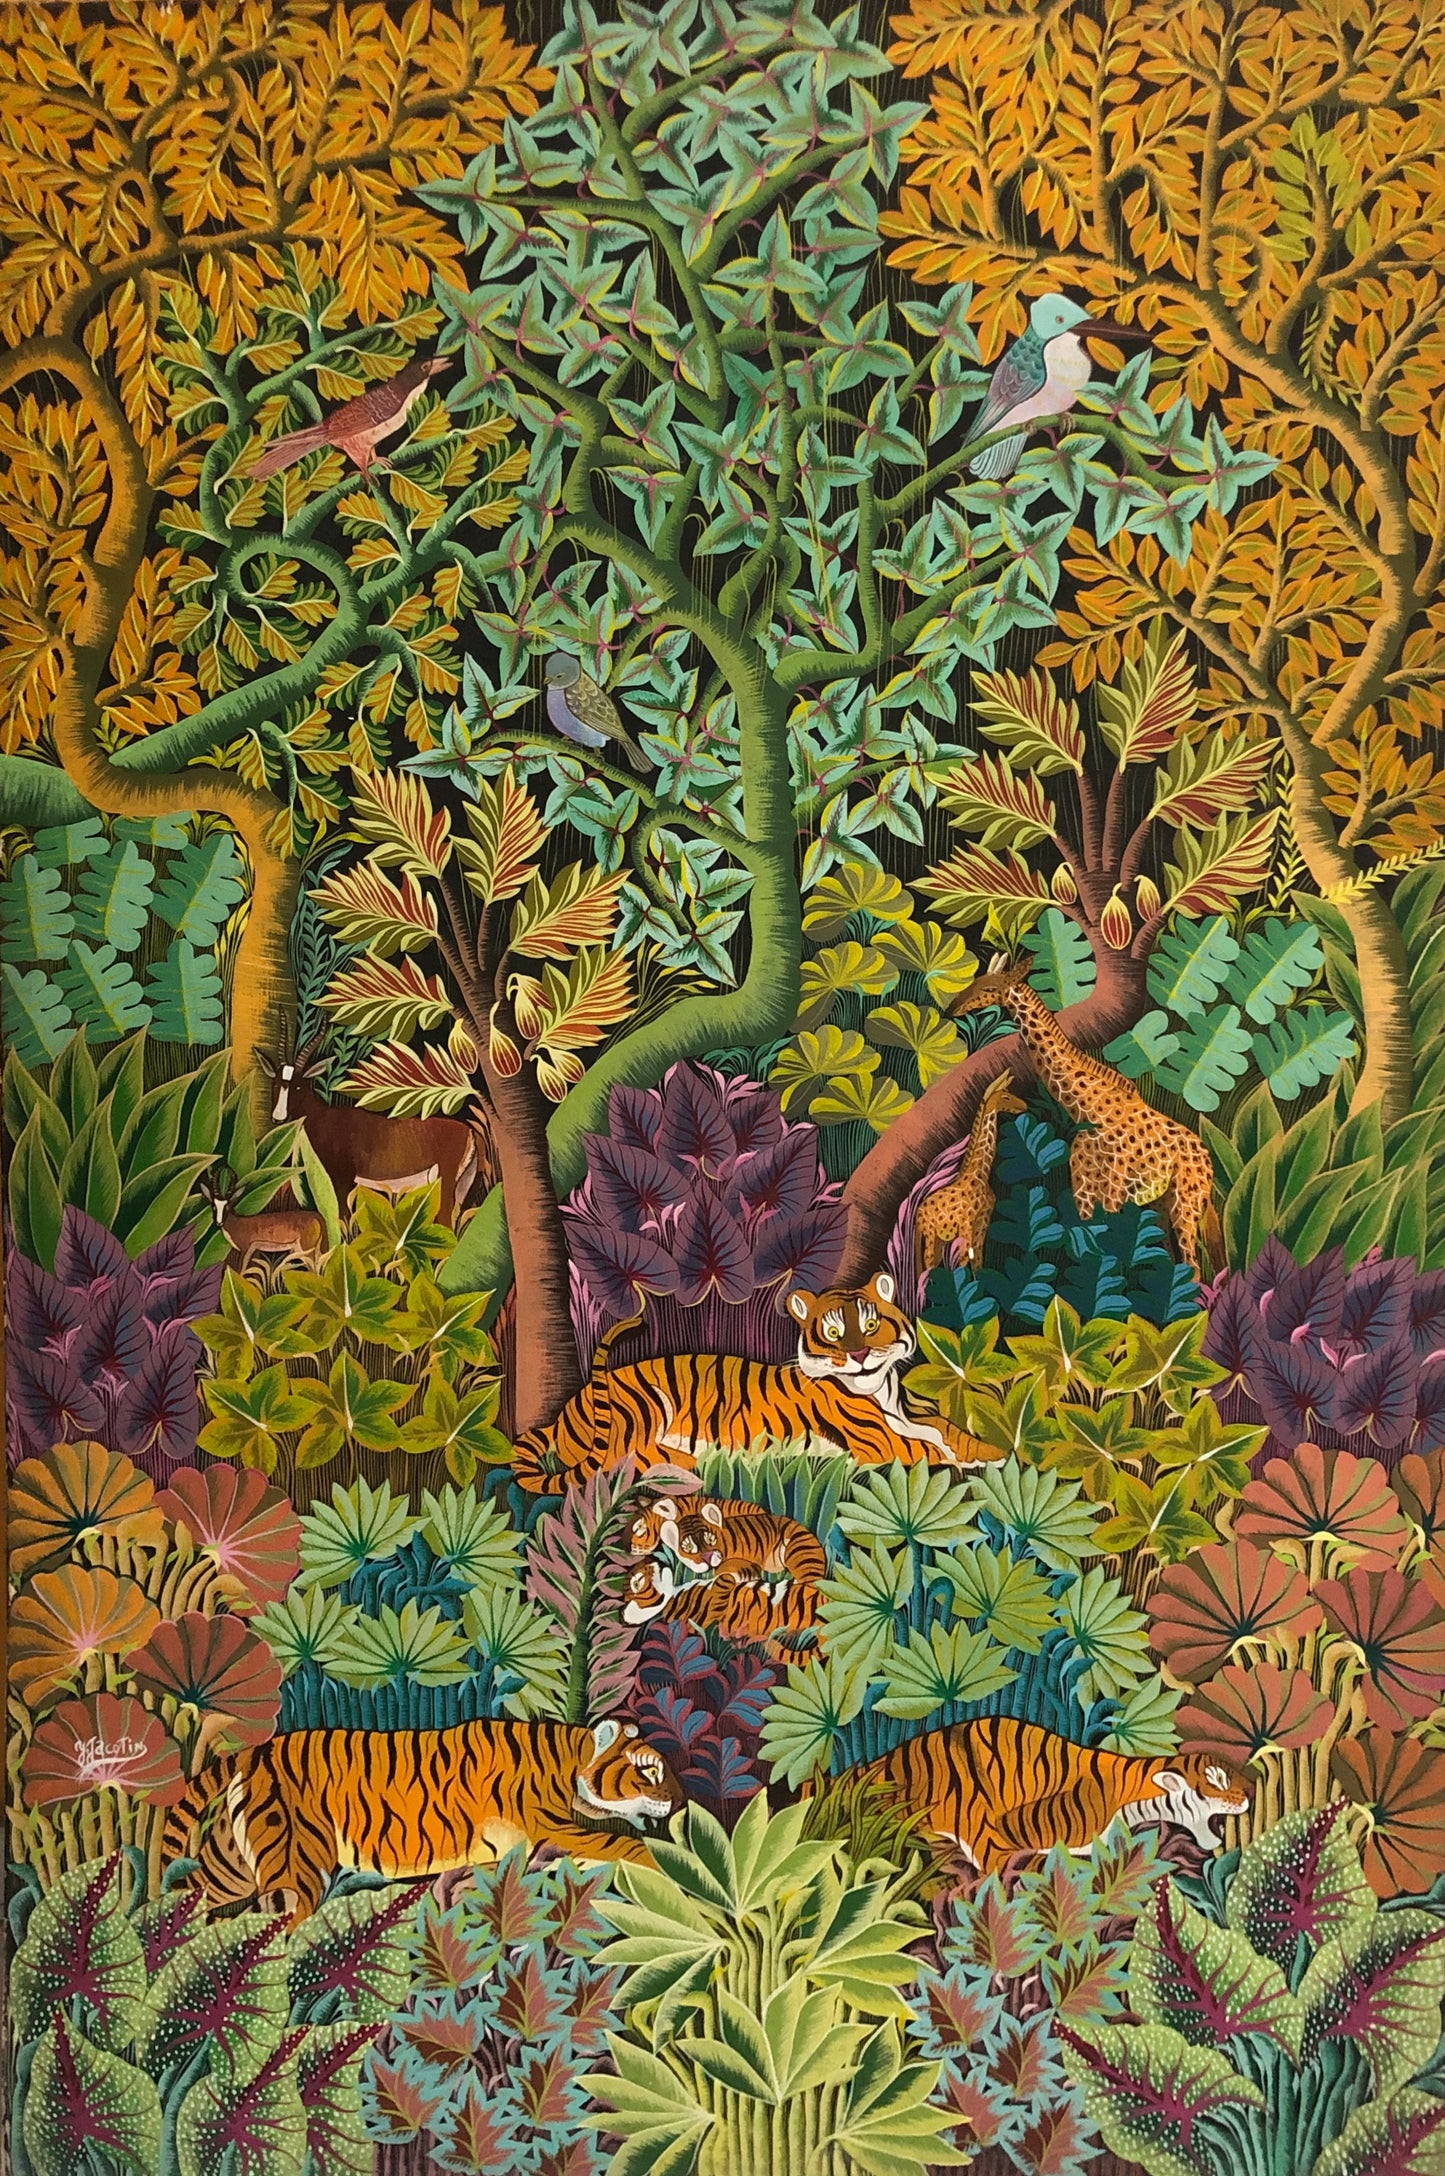 Yves Jacotin 48"x36" Tigres en una jungla Óleo sobre lienzo #3-4-90GN-HA